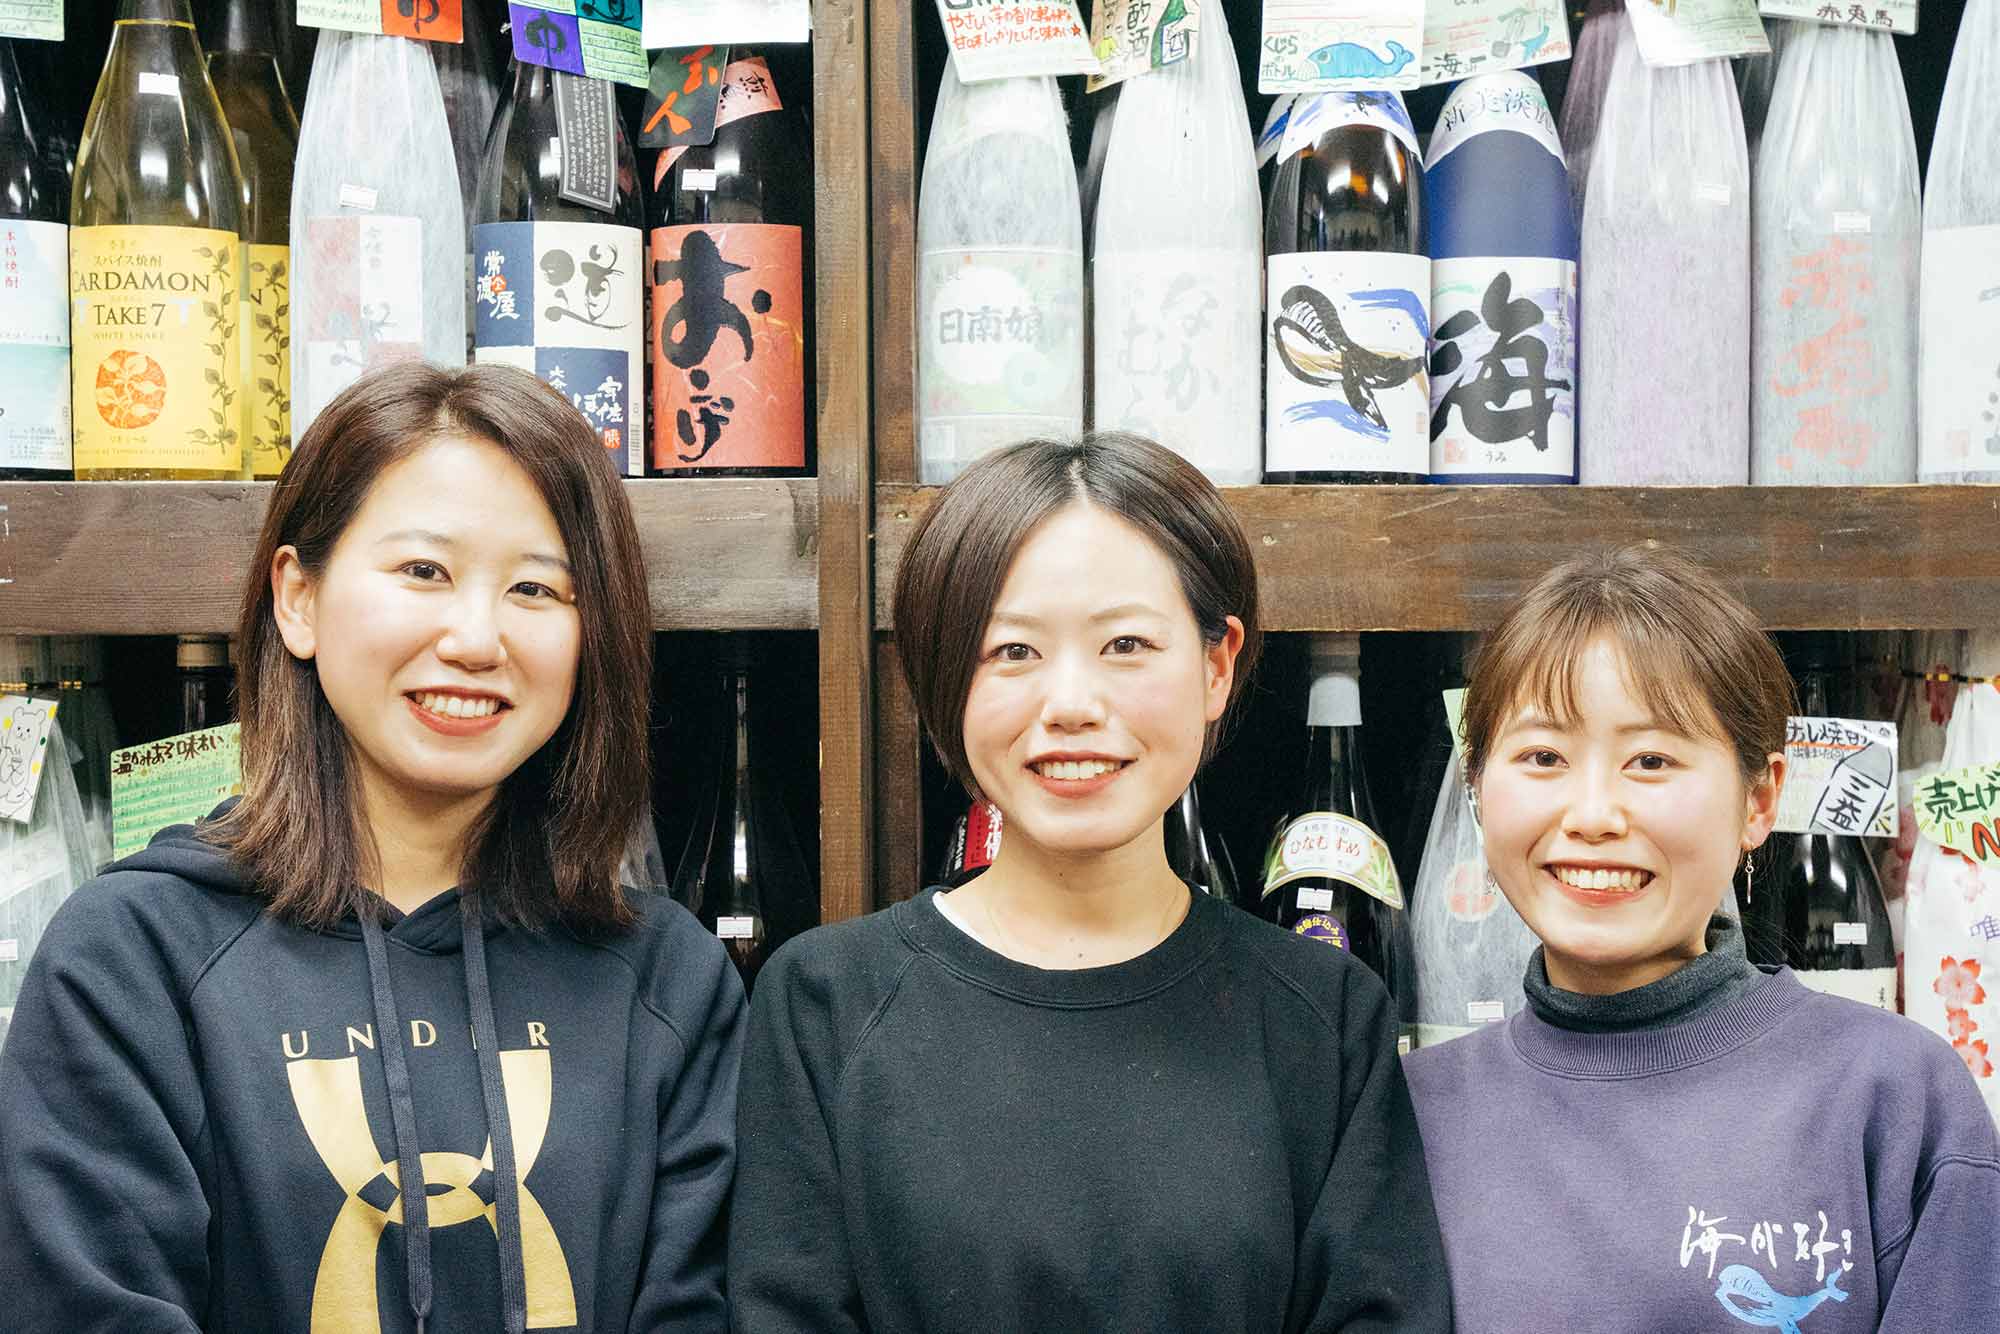 ワクワクに出会える 3姉妹が営む酒屋 三益酒店 東京都北区 クラフトスピリッツを再発見するwebマガジン